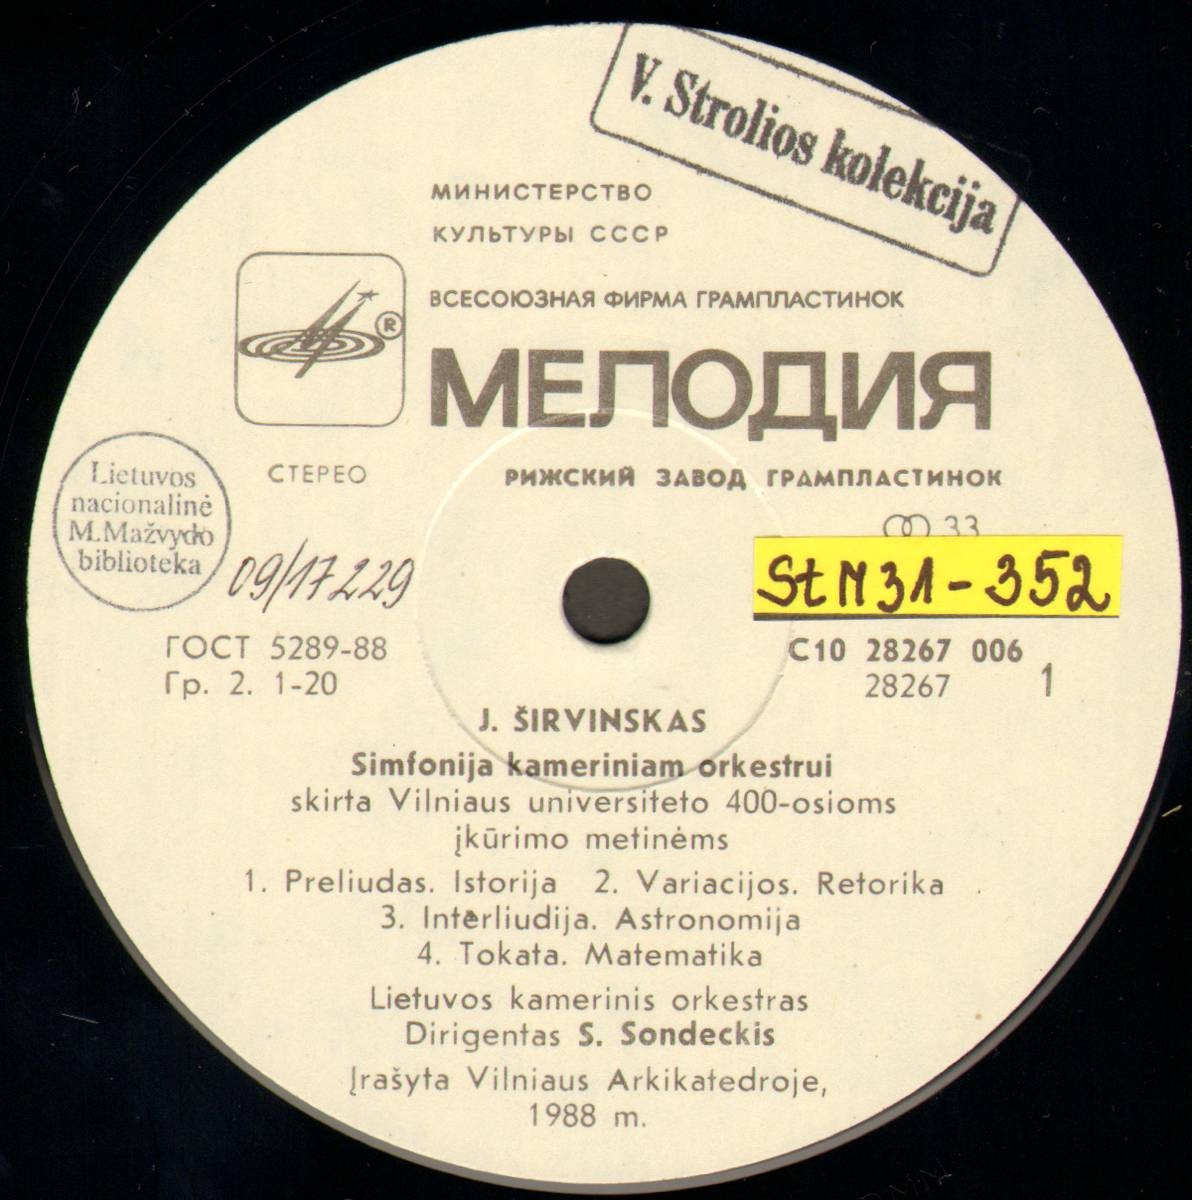 Ю. ШИРВИНСКАС (1943):